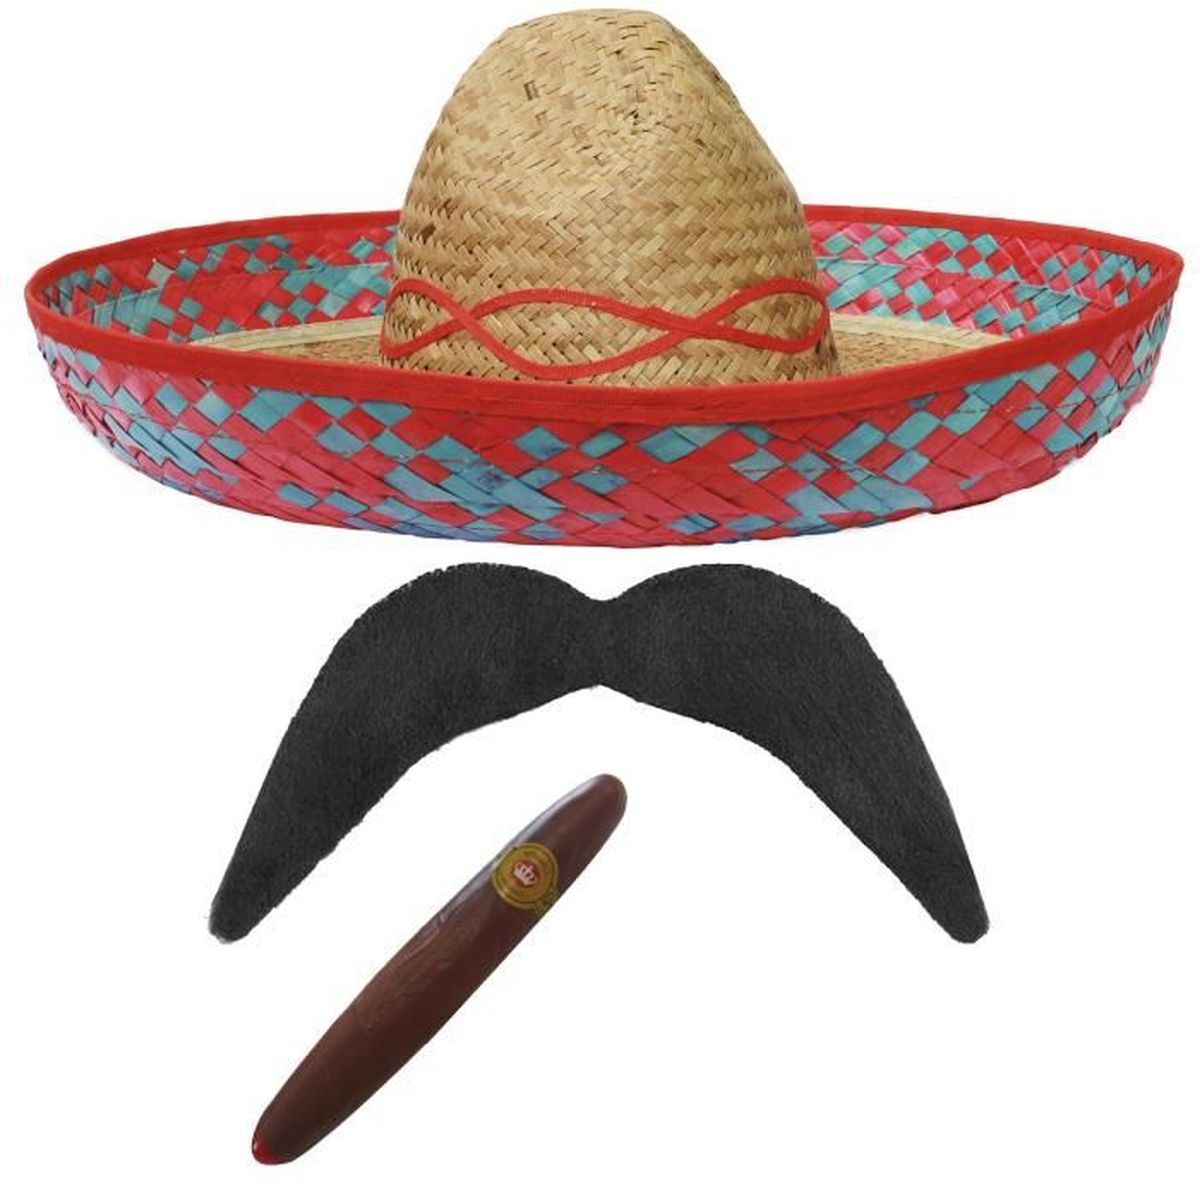 Sombrero mexicain en paille avec bordure /à pompons accessoire pour un d/éguisement ou des vacances